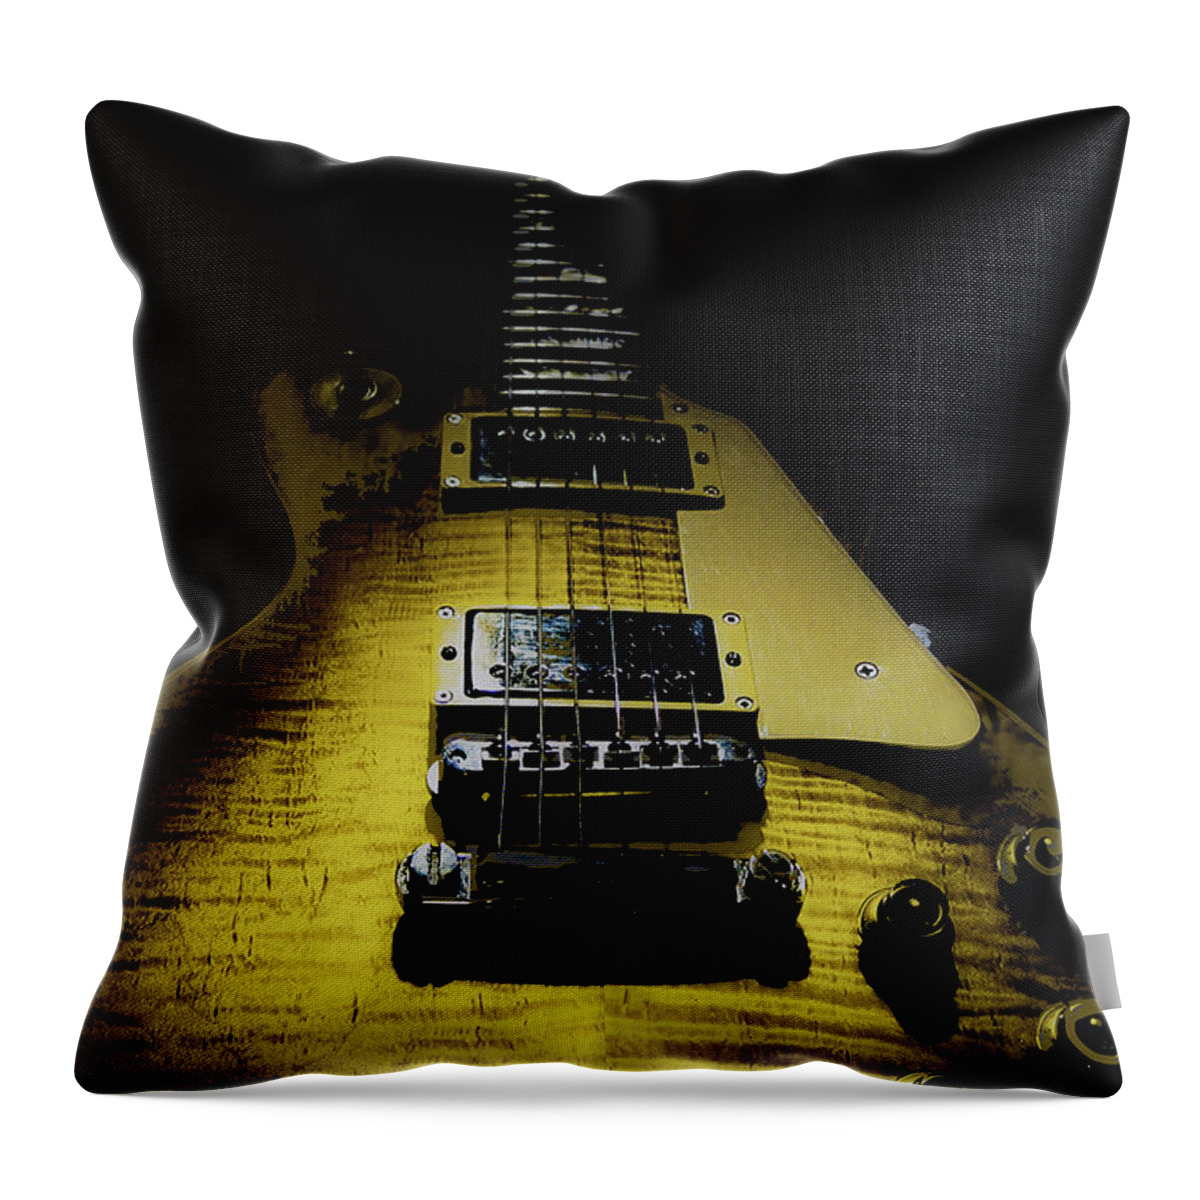 Guitar Throw Pillow featuring the digital art Honest Play Wear Tour Worn Relic Guitar by Guitarwacky Fine Art